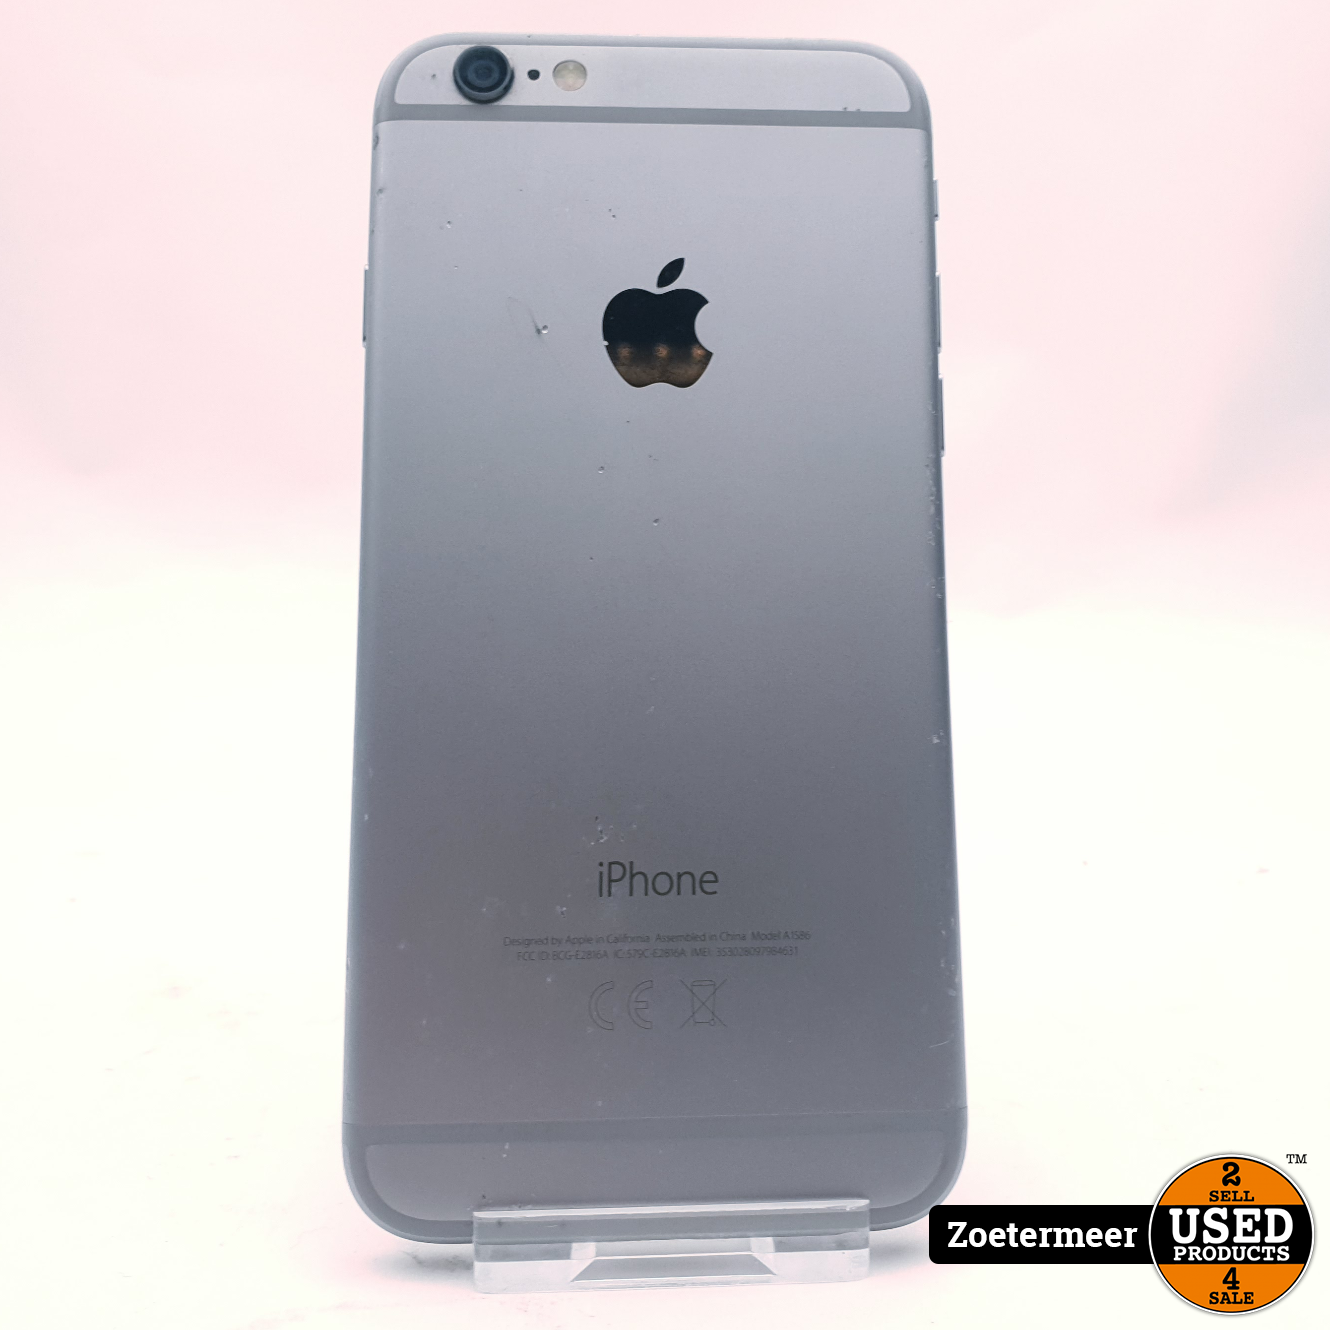 iPhone 6 32GB - Used Products Zoetermeer